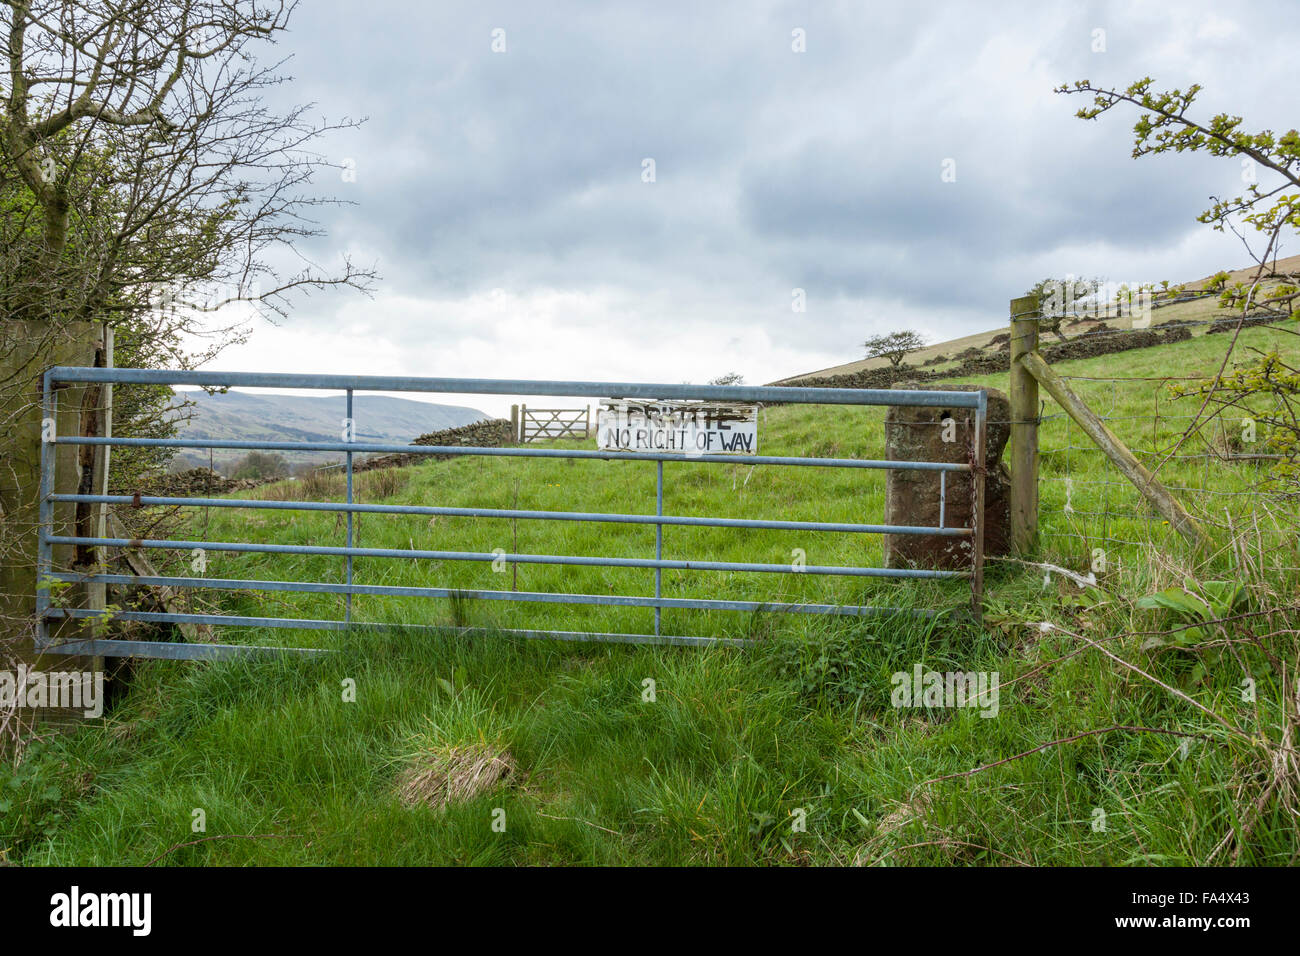 Les terres privées. Ferme avec privés aucun droit de passage signe, Peak District, Derbyshire, Angleterre, RU Banque D'Images